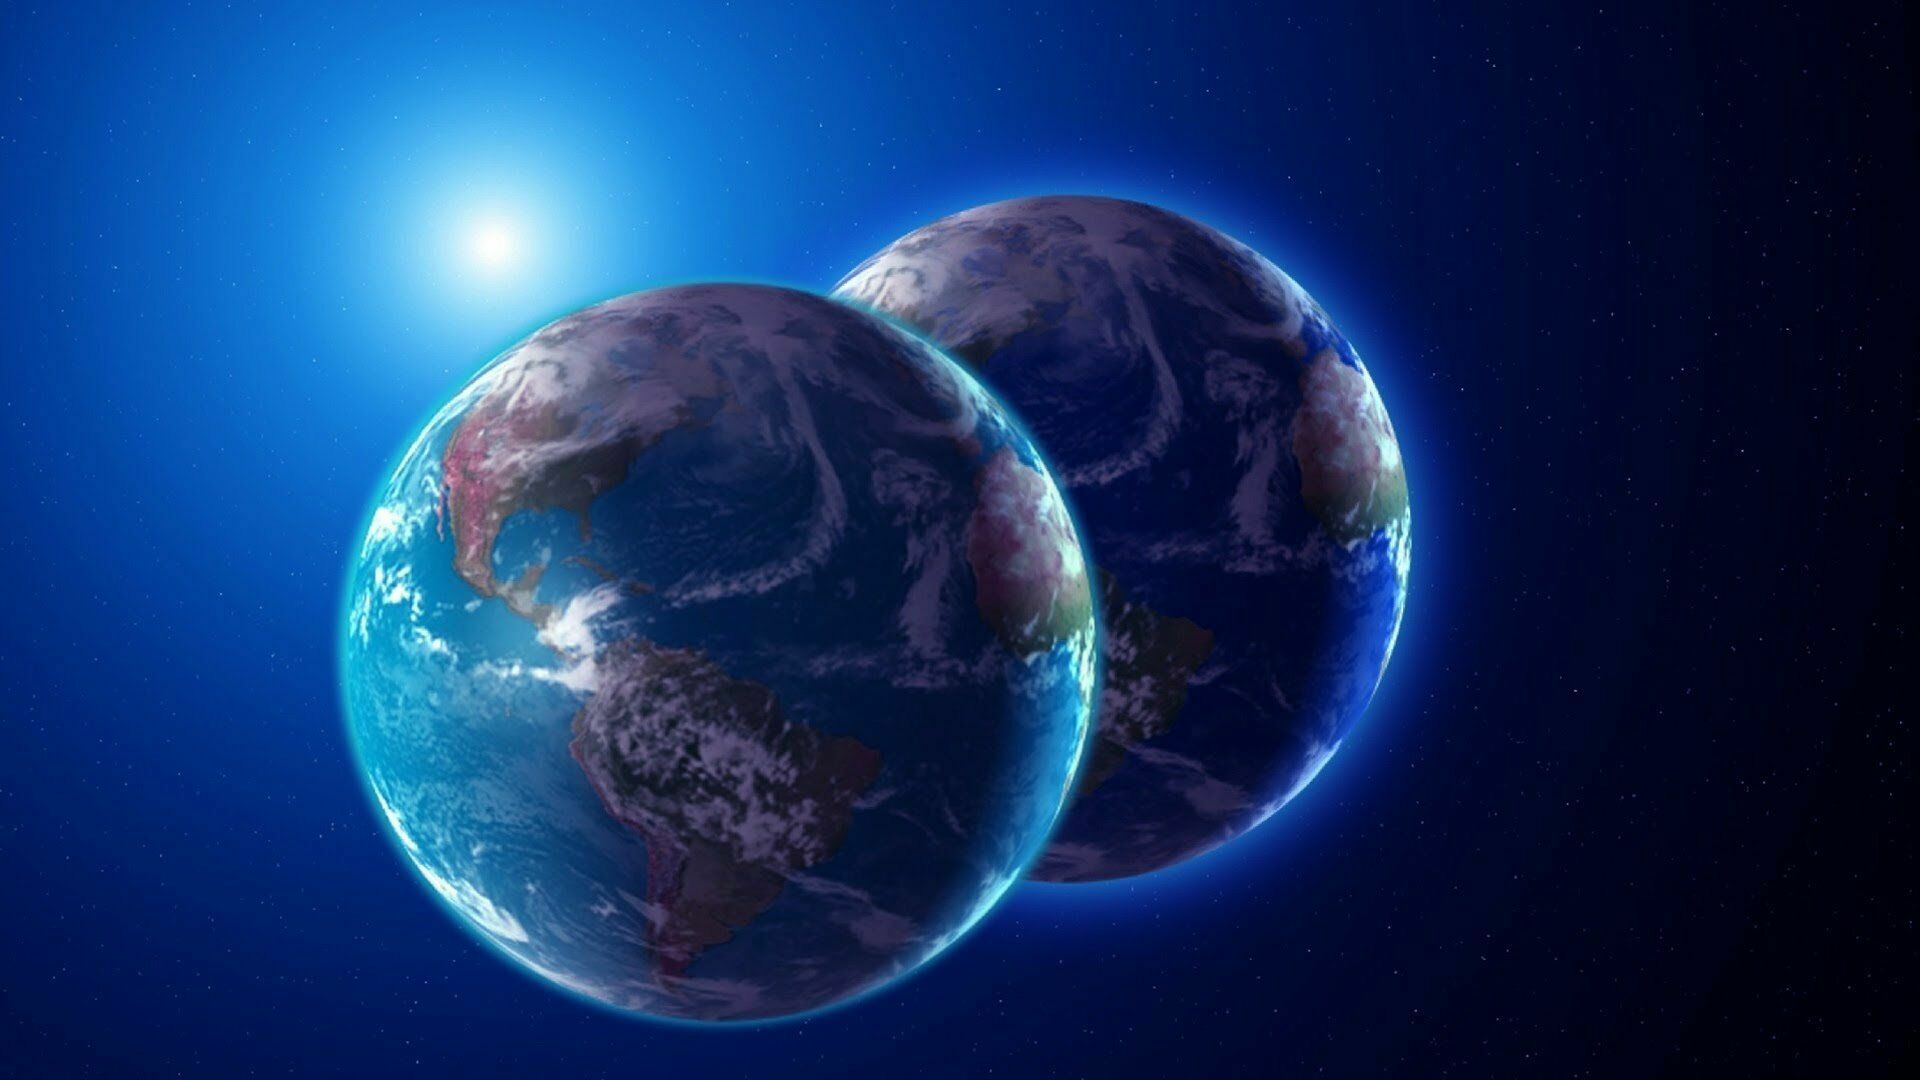 Астрономы нашли "двойника" Земли